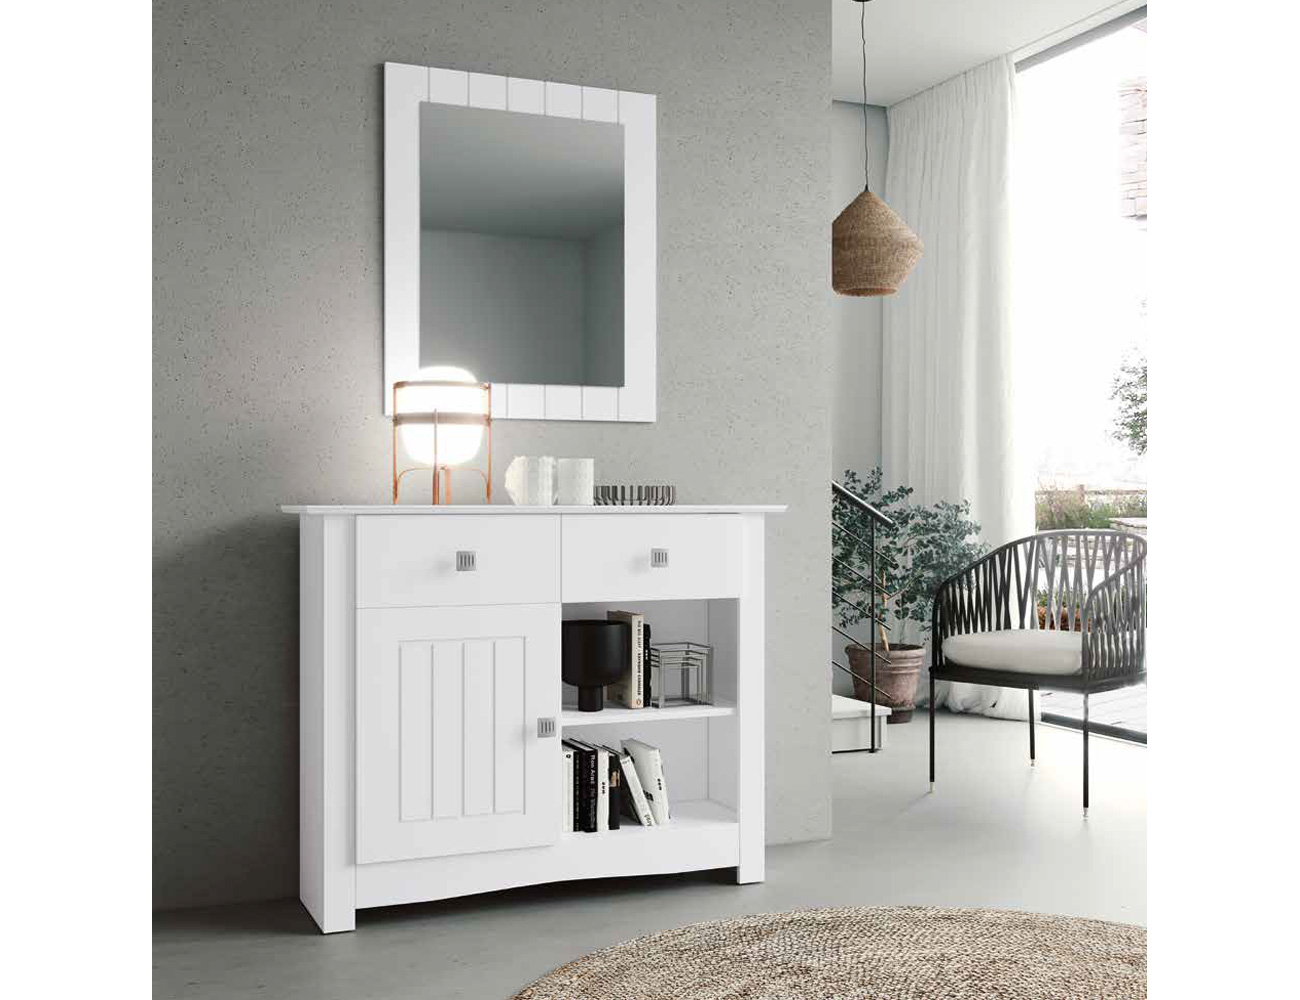 Mueble recibidor con cajón y espejo incluido blanco y roble economico